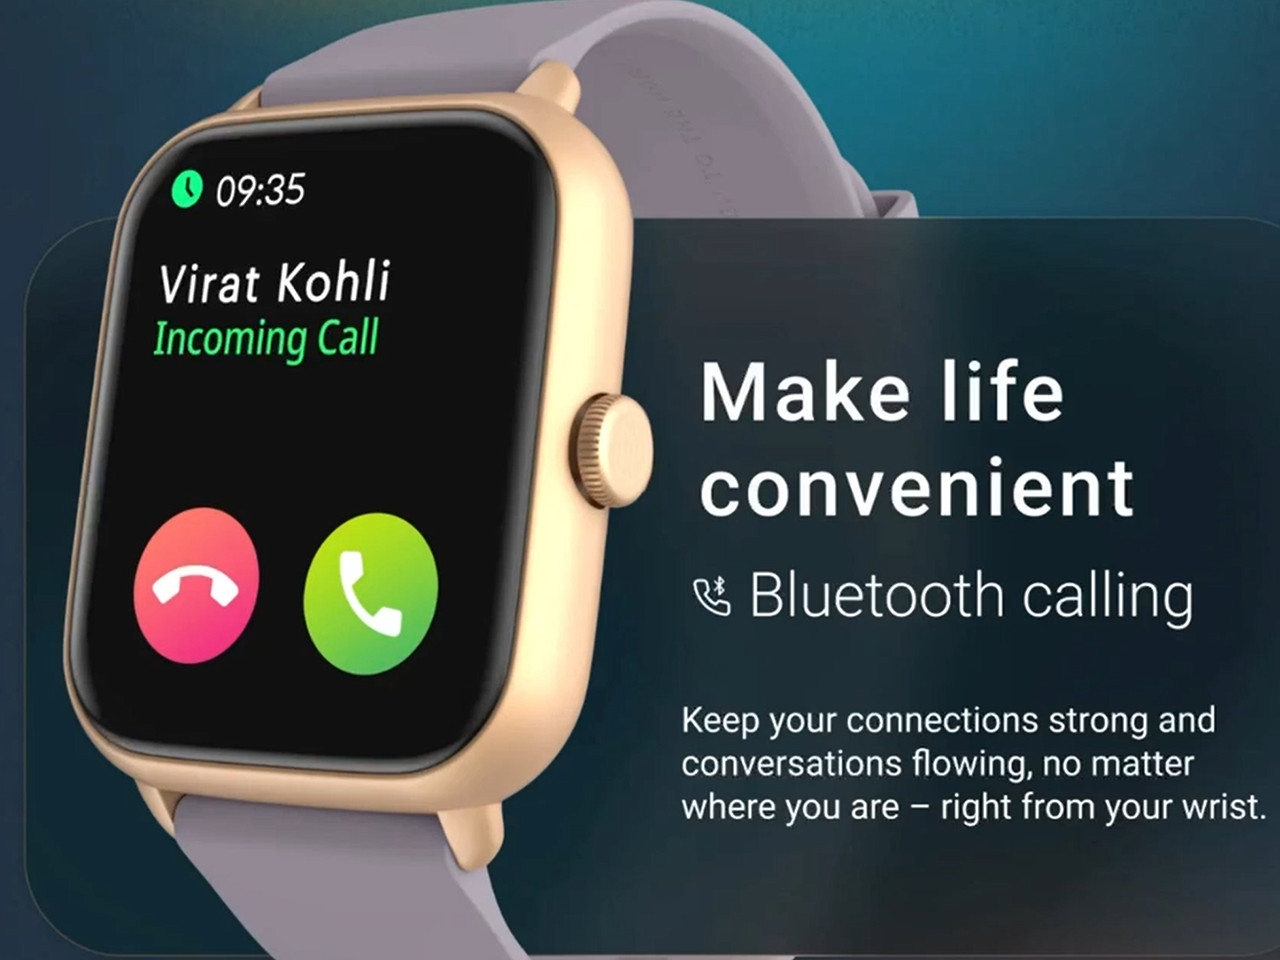 Met veel genoegen introduceren wij onze nieuwste gestroomlijnde smartwatch met zinklegering, een perfecte mix van innovatie en stijl.